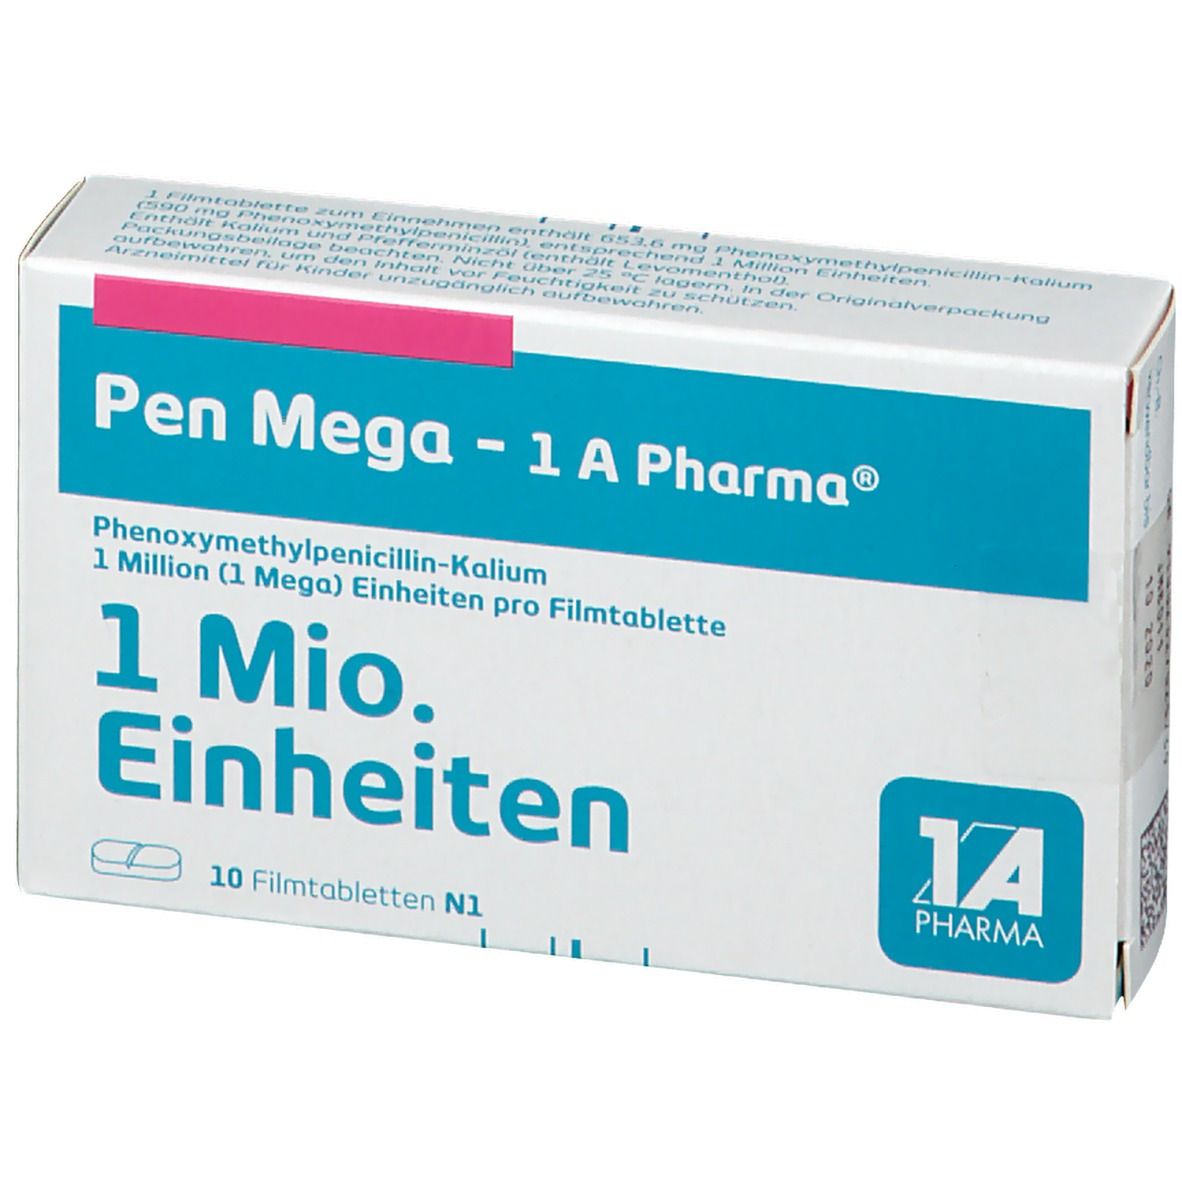 Pen Mega 1A Pharma®